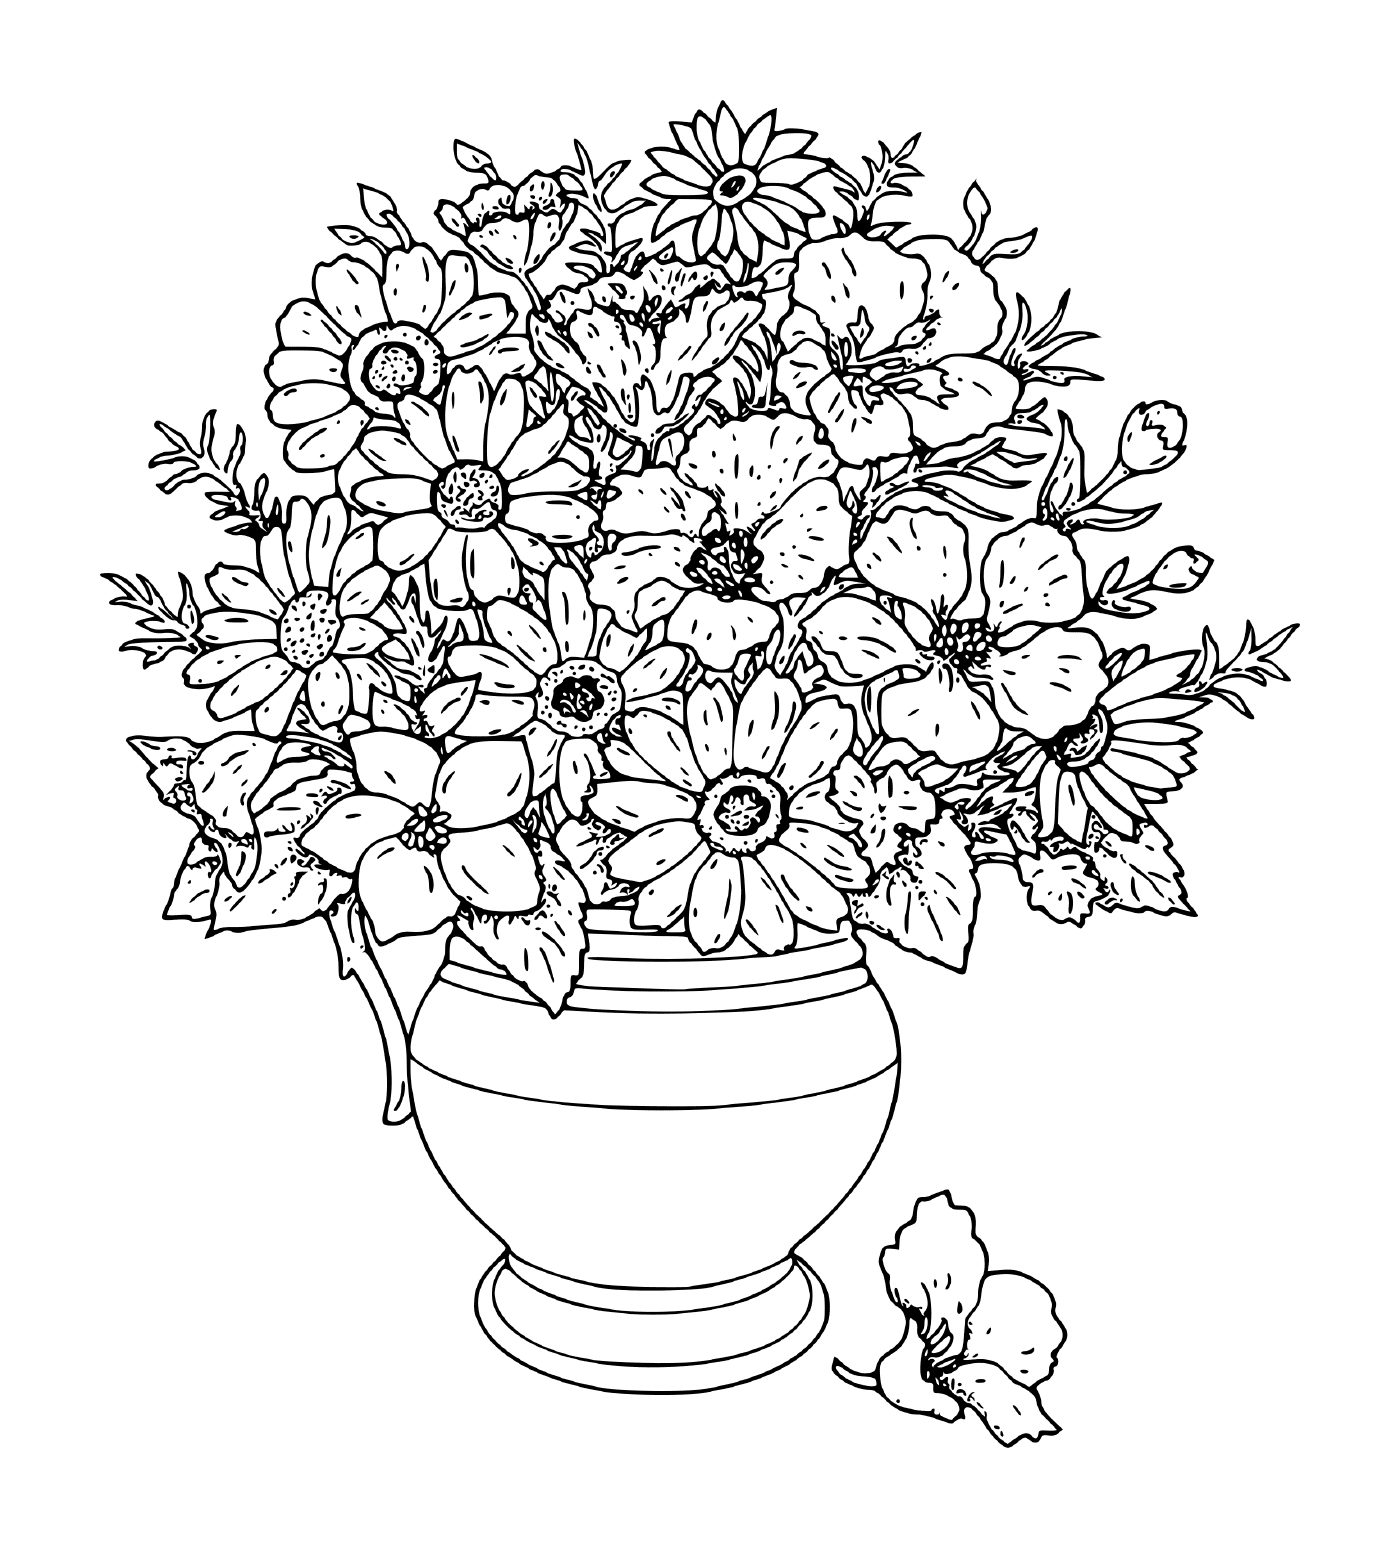   Des fleurs dans un vase 